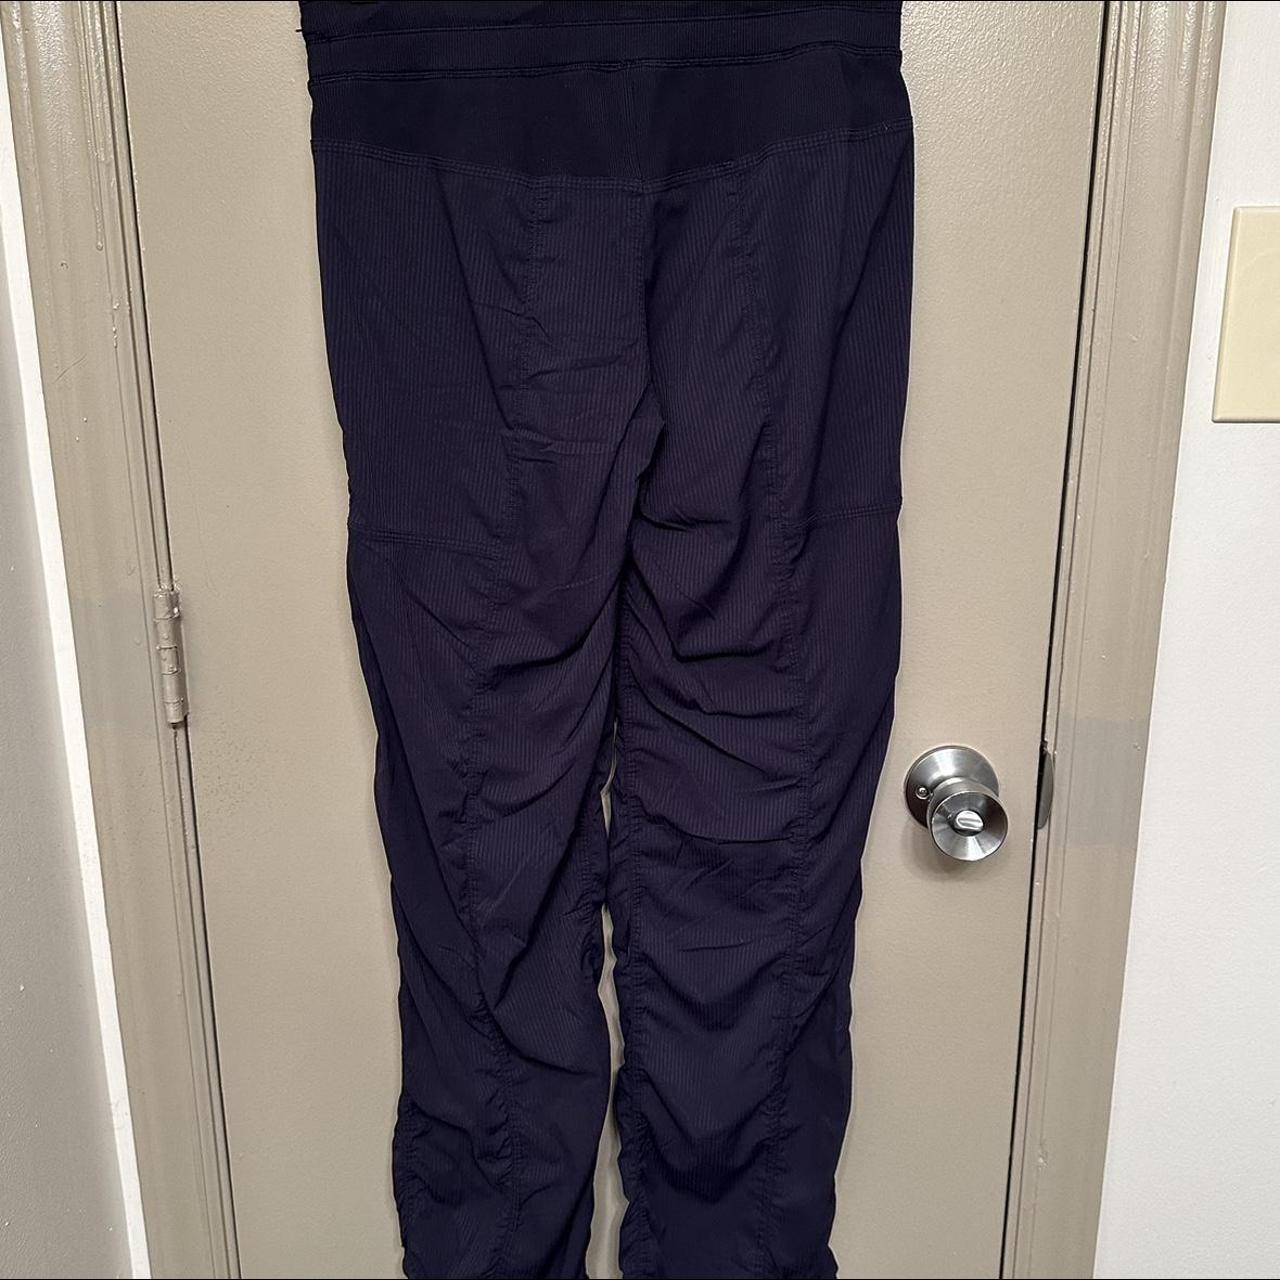 navy blue lululemon dance pants. i've had these for - Depop